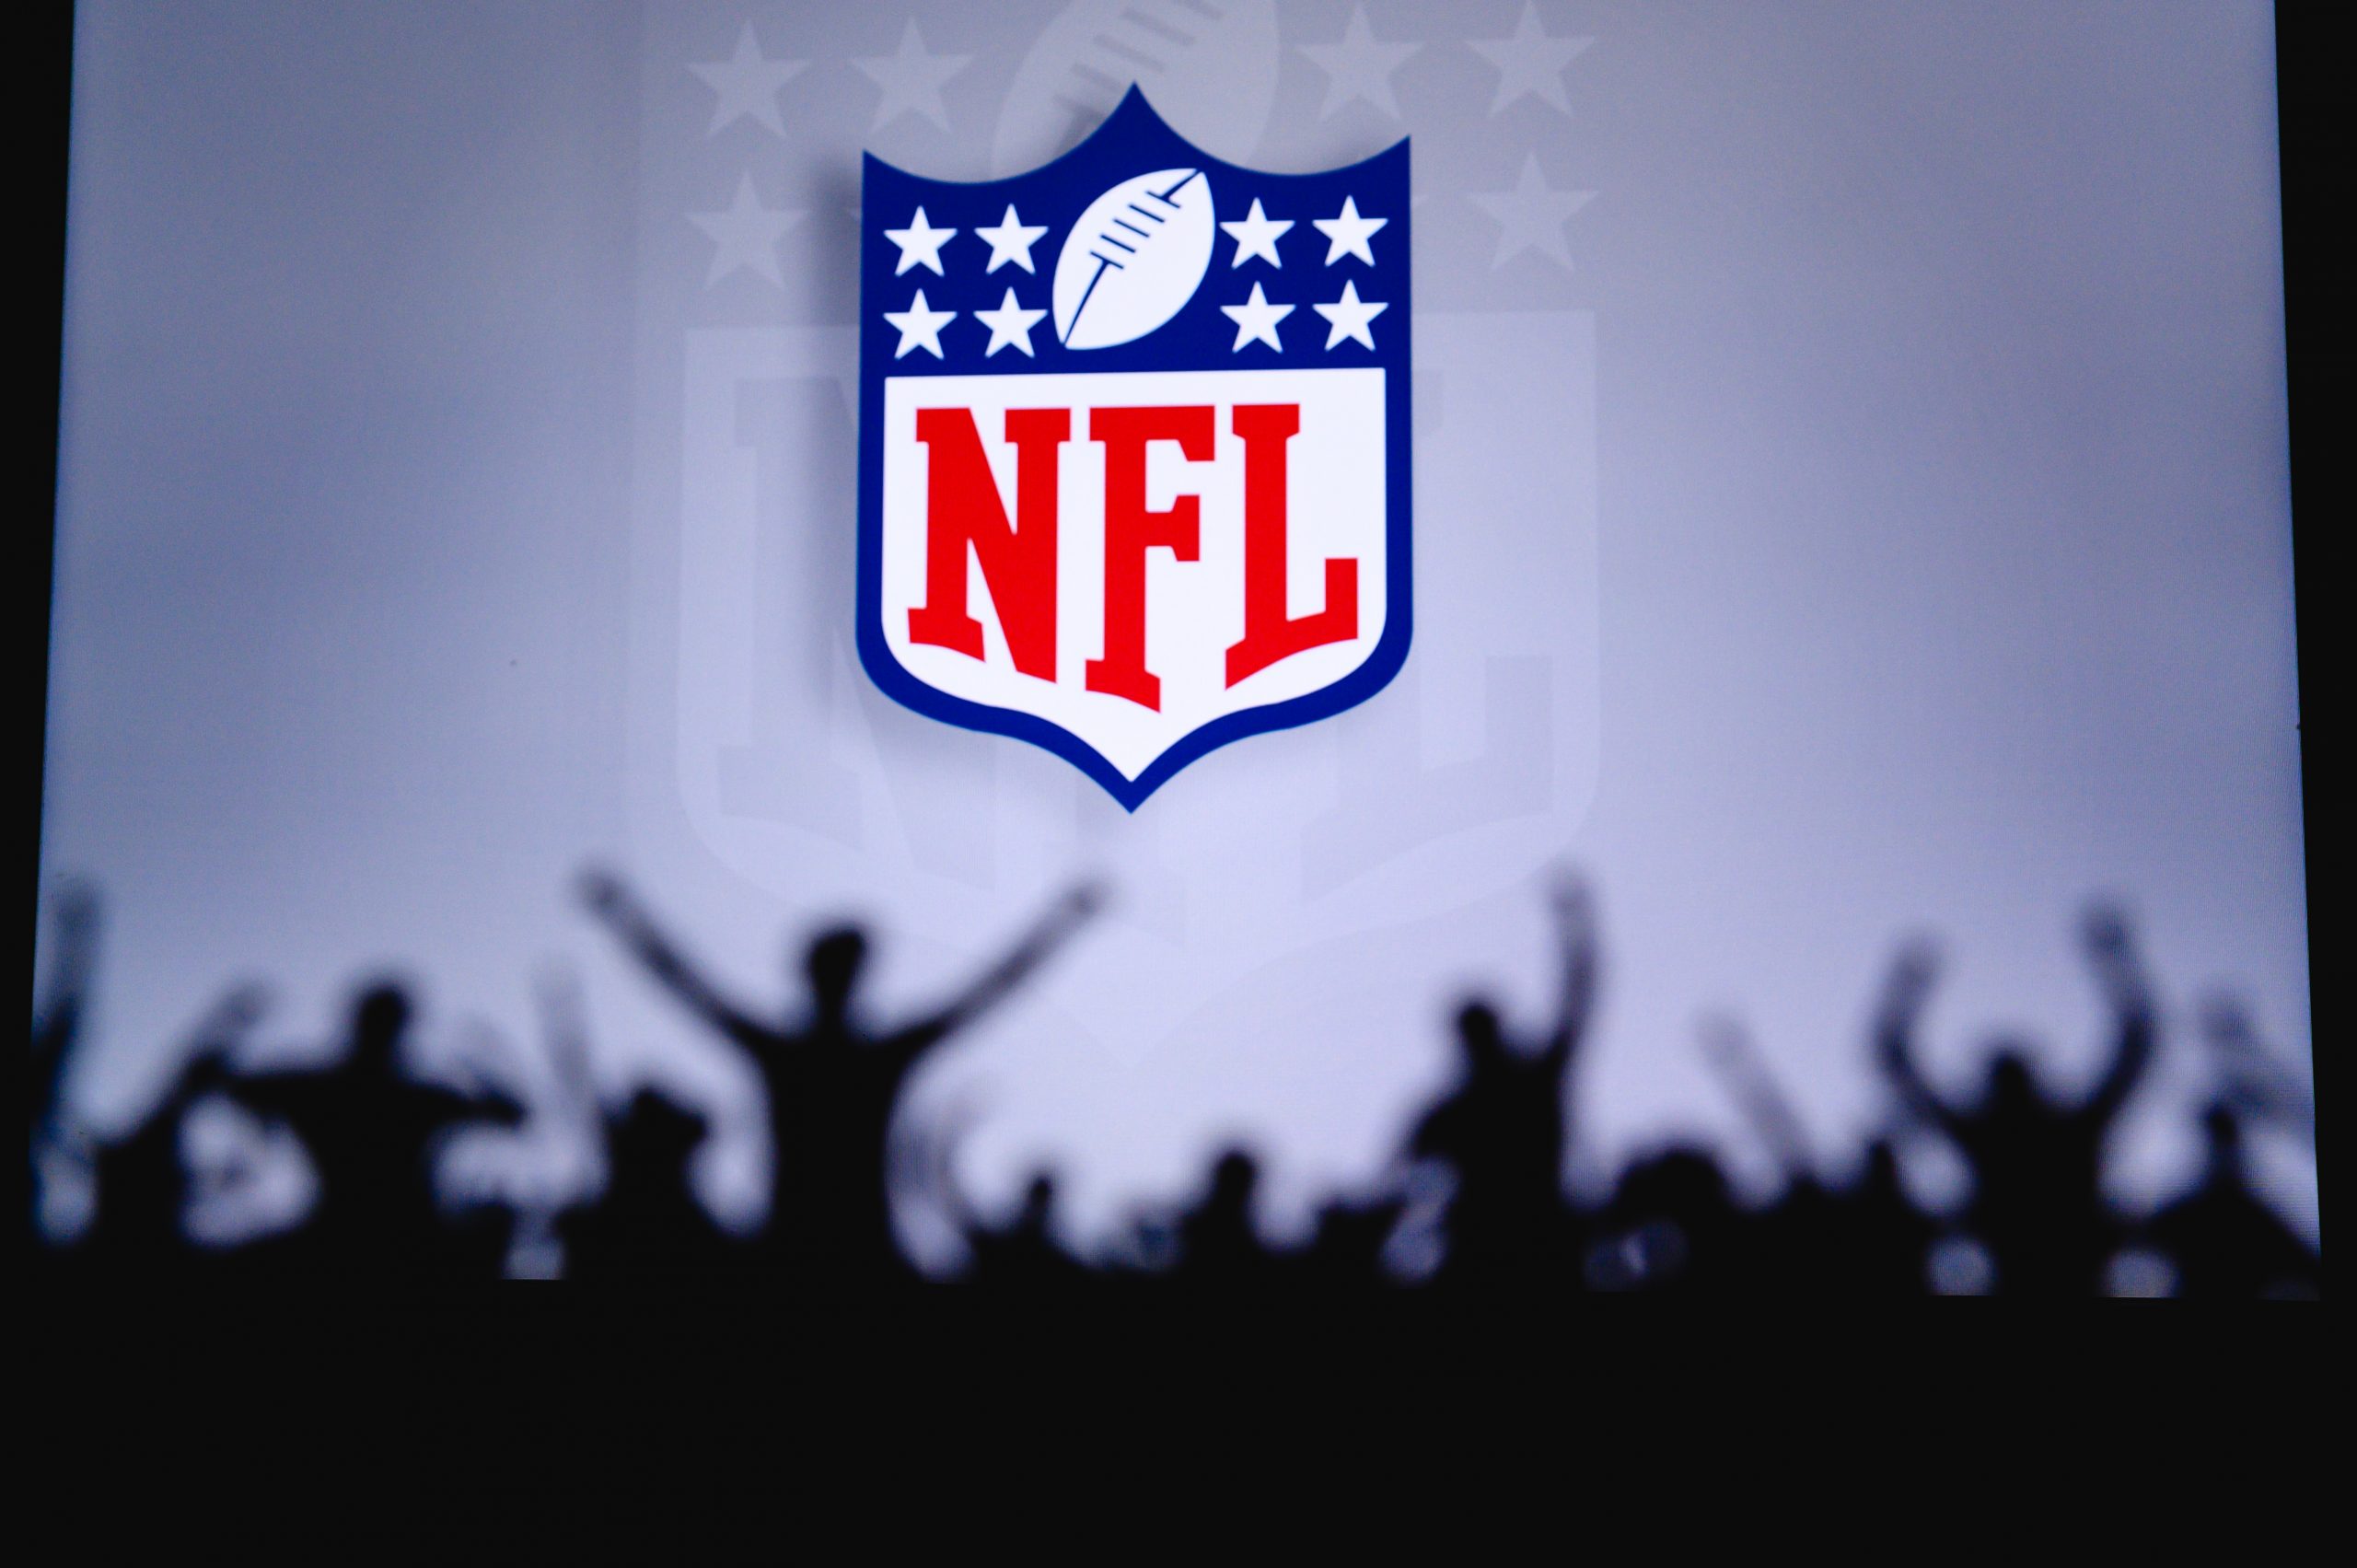 FootballR - NFL - Das NFL-Logo erscheint im dritten Viertel als Silhouette vor einer Menschenmenge und verdeutlicht die Bedeutung von Notfall-Quarterbacks. NFL Standings, NFL Tabelle